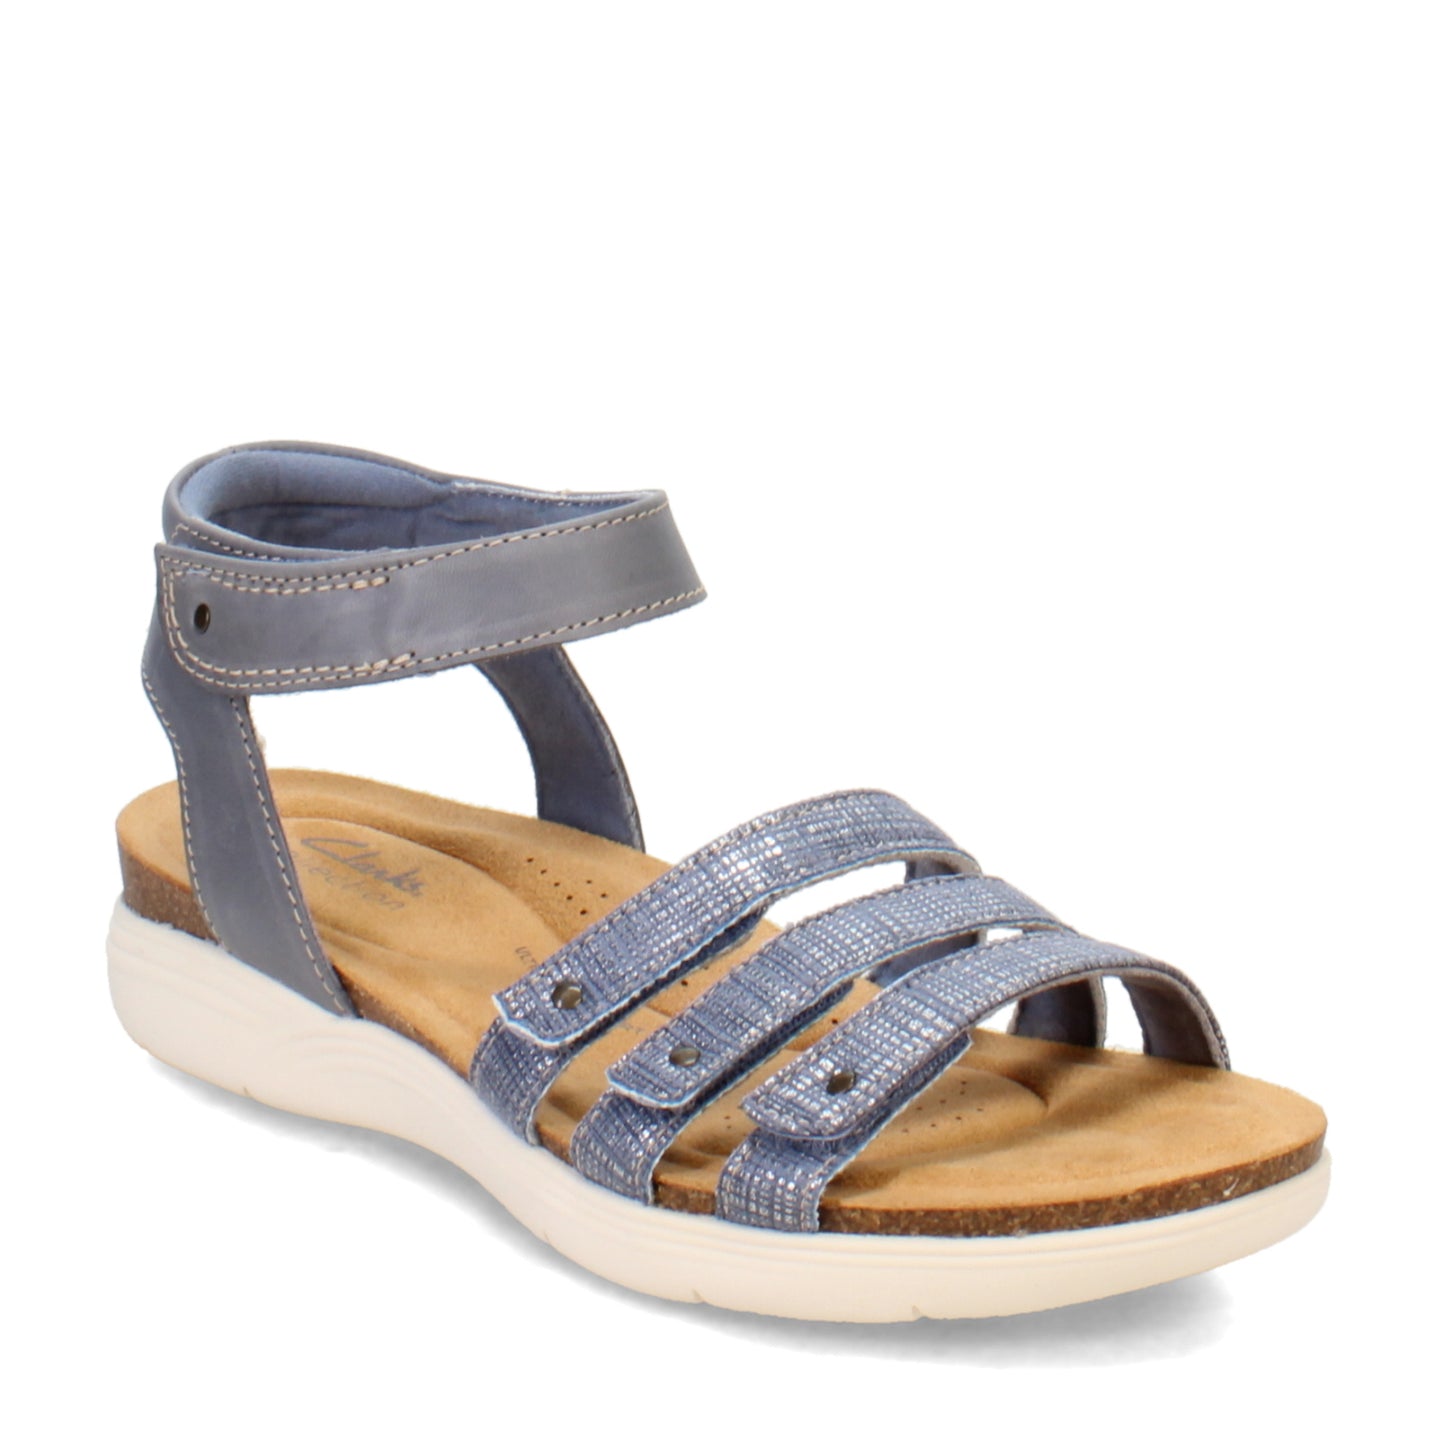 Peltz Shoes  Women's Clarks April Dove Sandal Denim 26170508